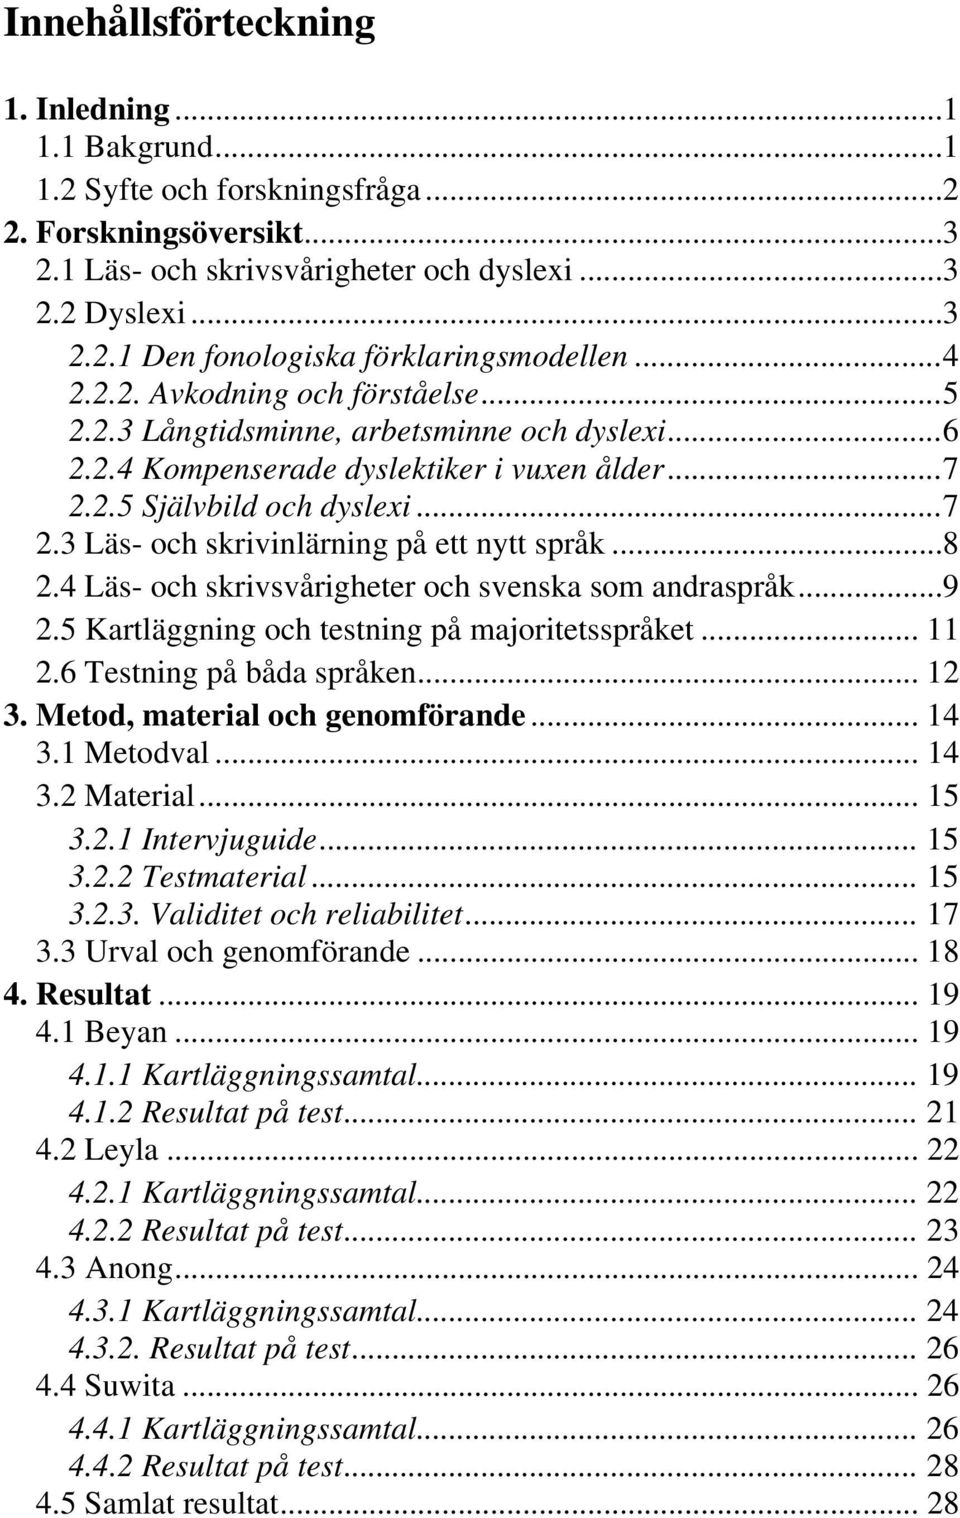 ..8 2.4 Läs- och skrivsvårigheter och svenska som andraspråk...9 2.5 Kartläggning och testning på majoritetsspråket... 11 2.6 Testning på båda språken... 12 3. Metod, material och genomförande... 14 3.